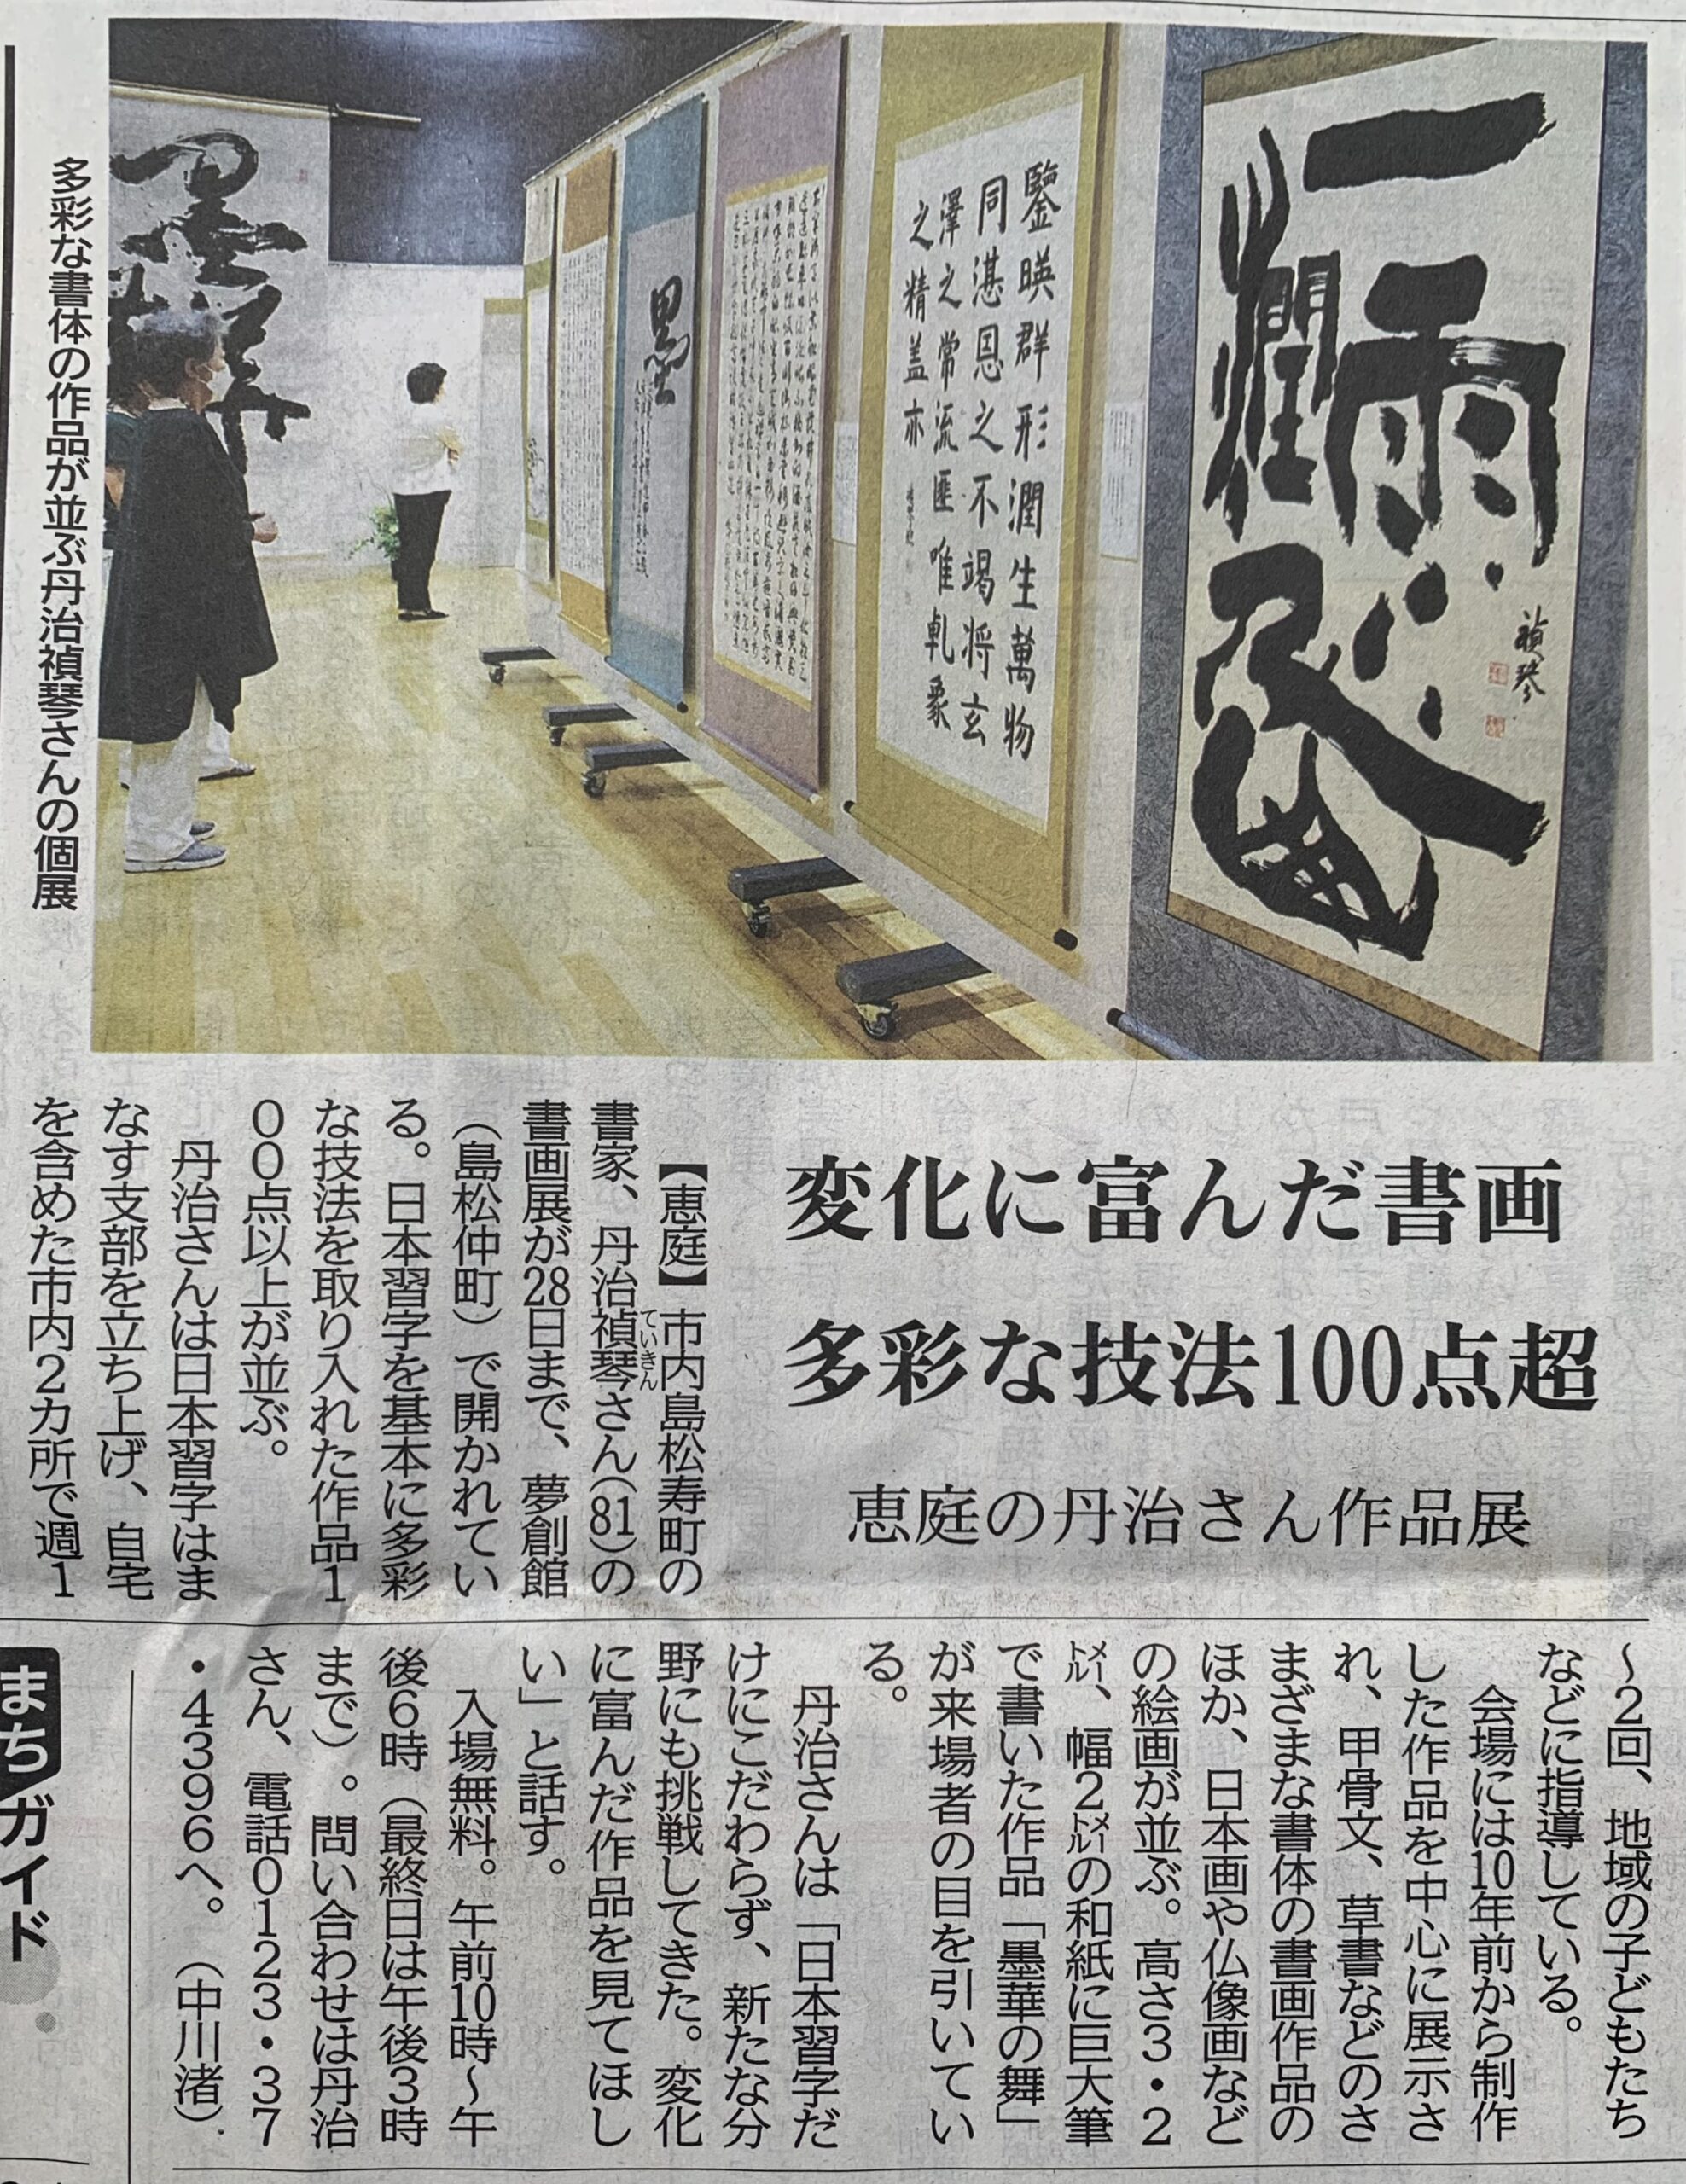 丹治禎琴さんが「書画展」を開催しました